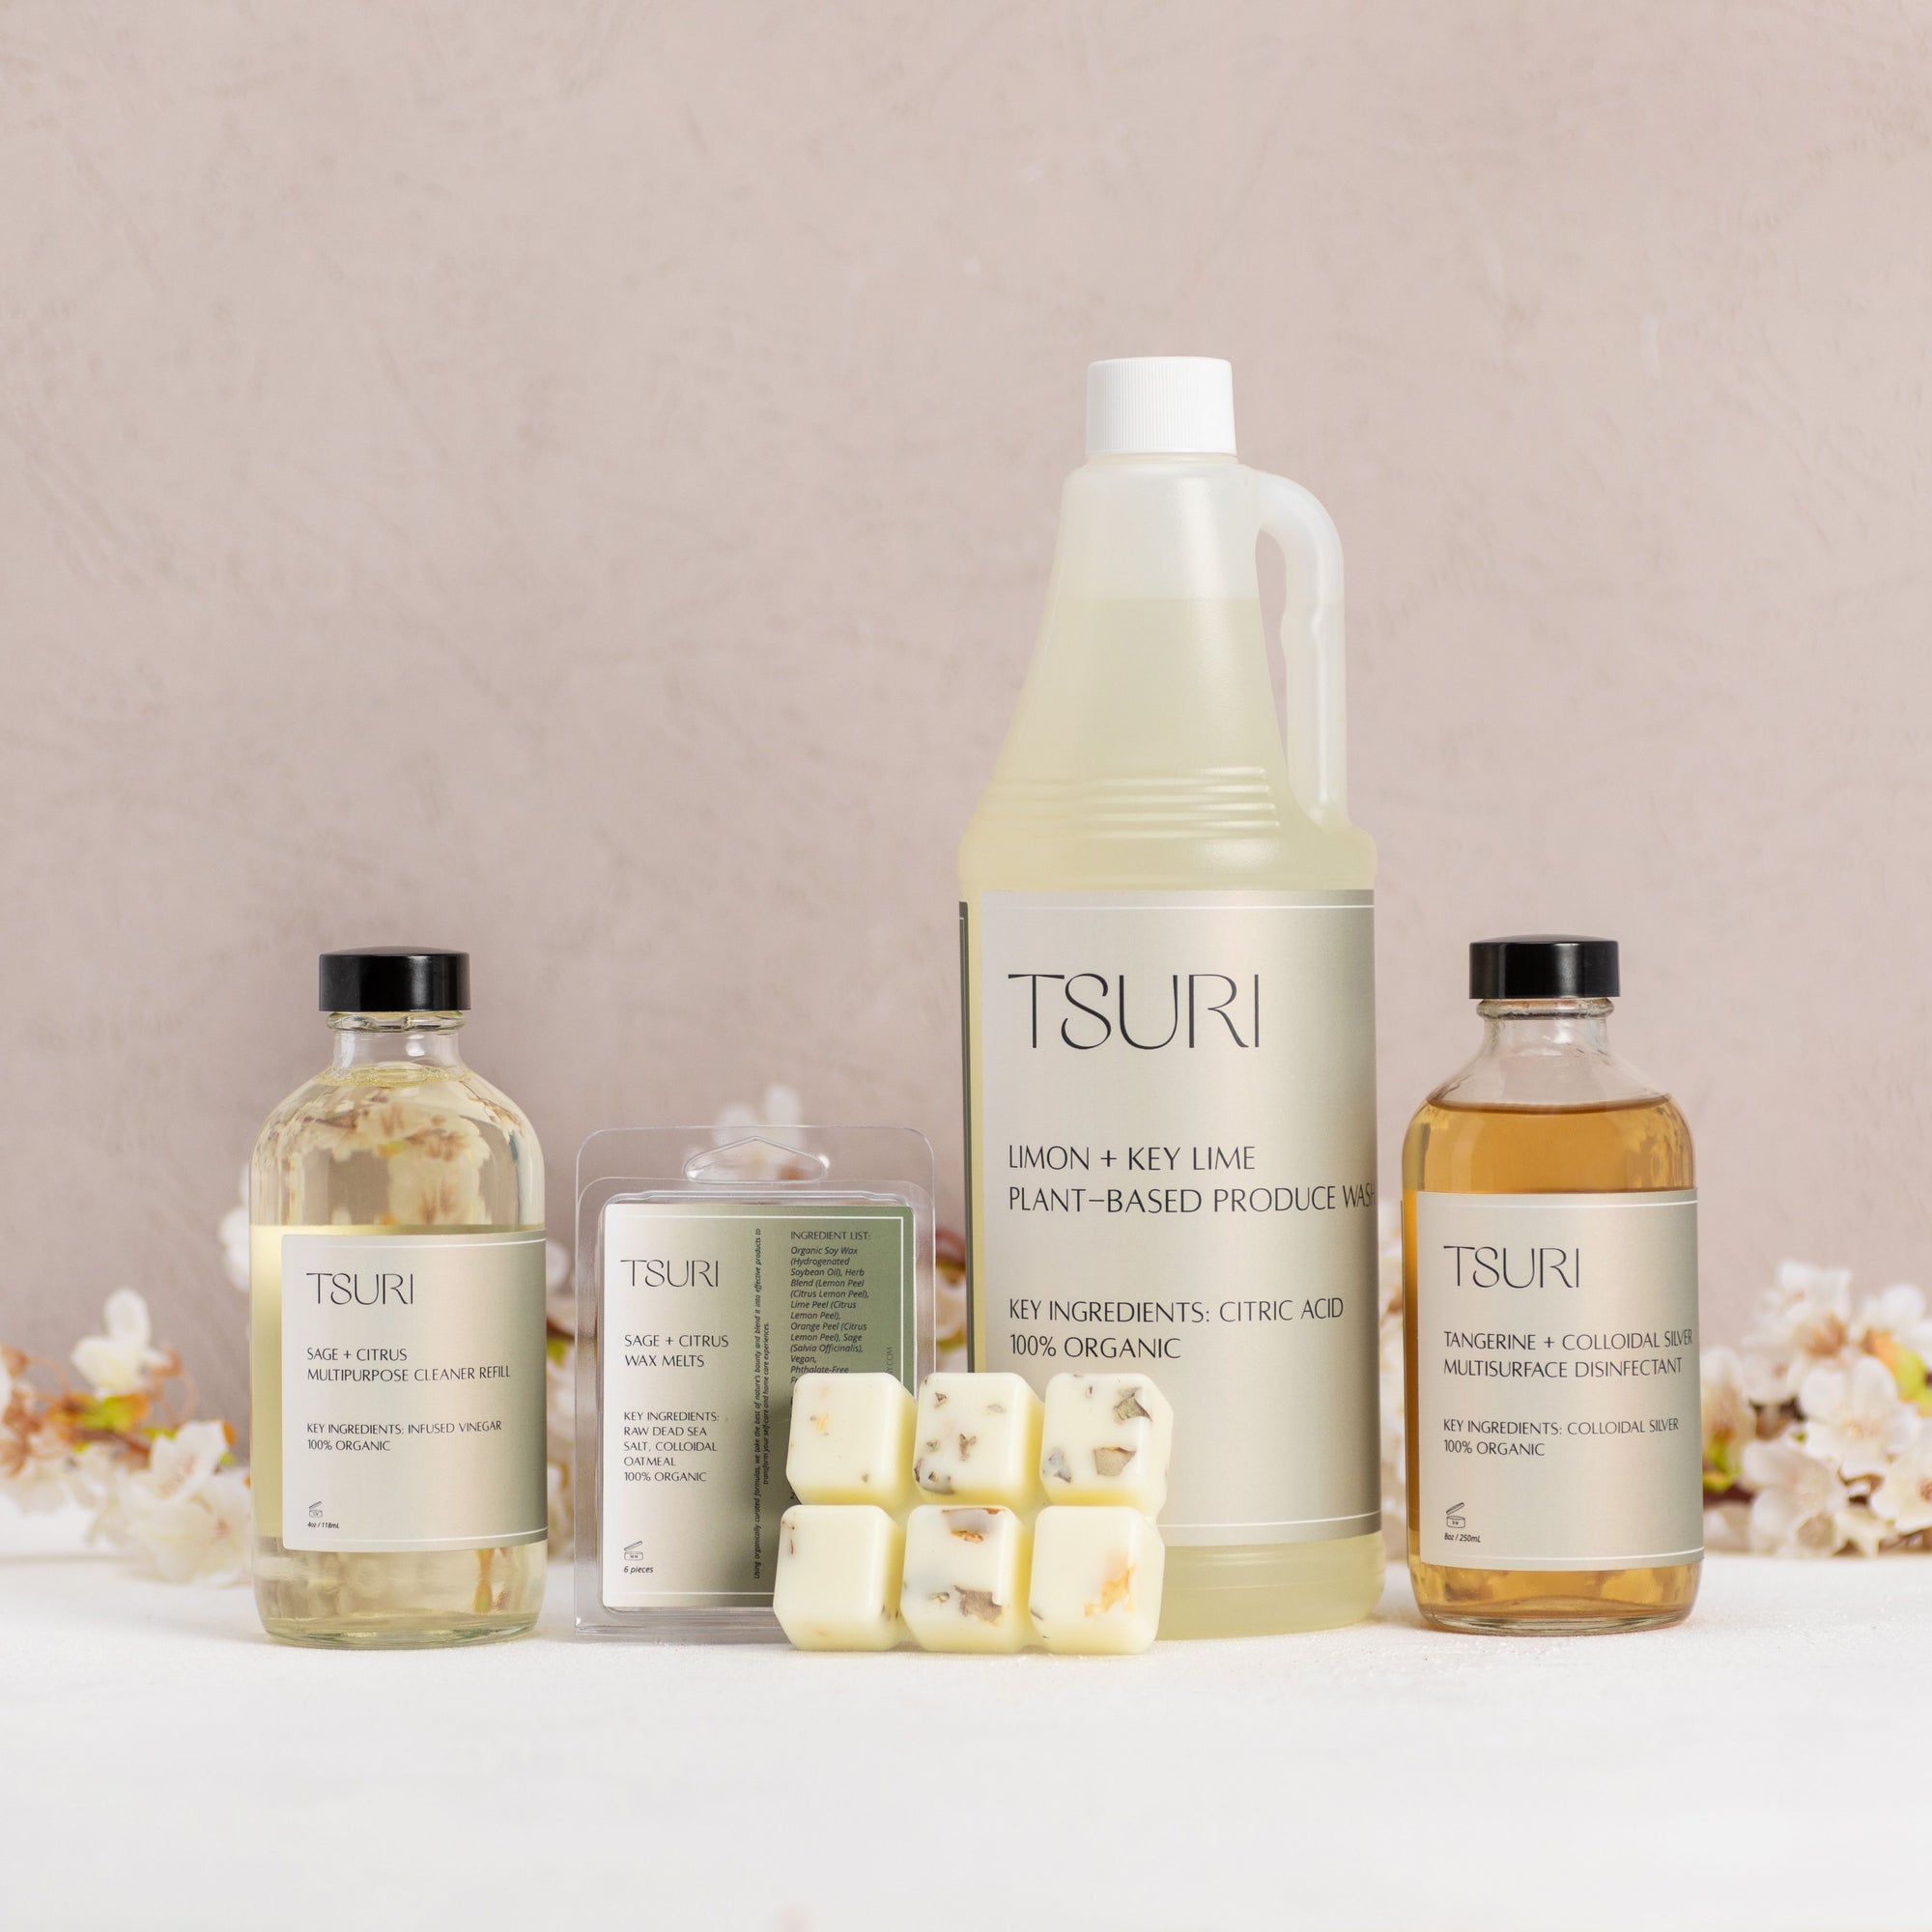 White Wood + Lavender Scented Oil - The Tsuri Company